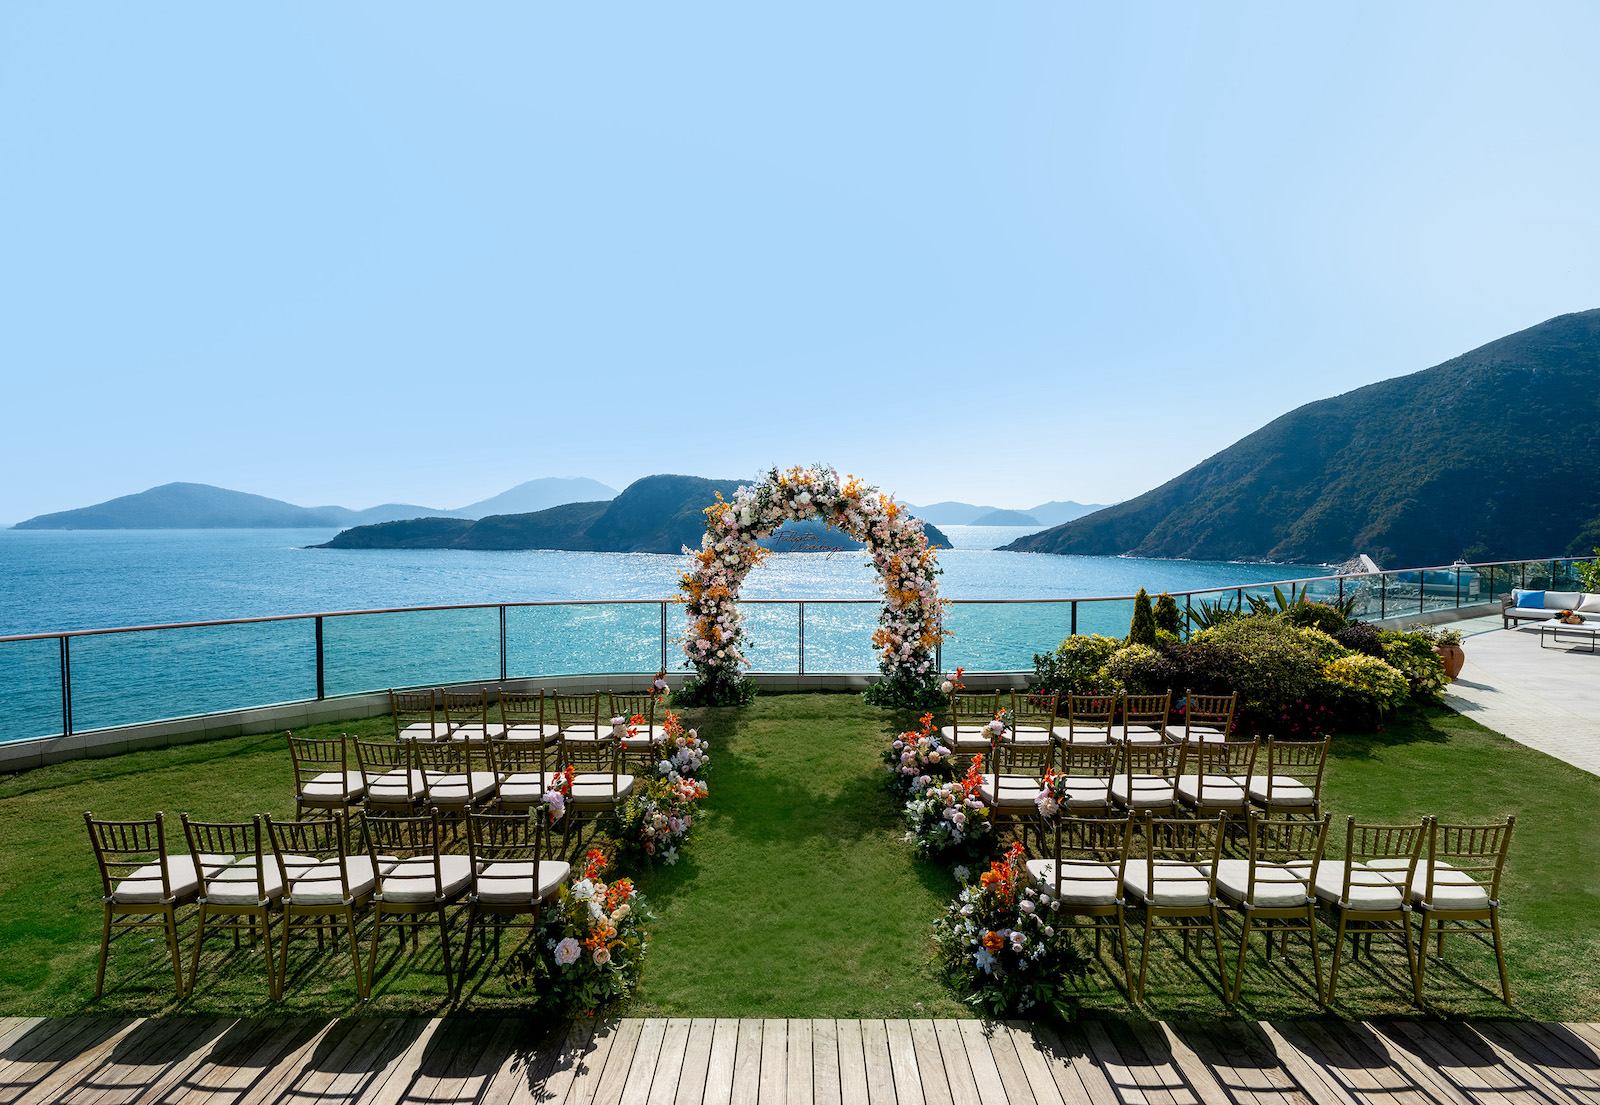 香港富麗敦海洋公園酒店浪漫 · 海岸婚禮諮詢日